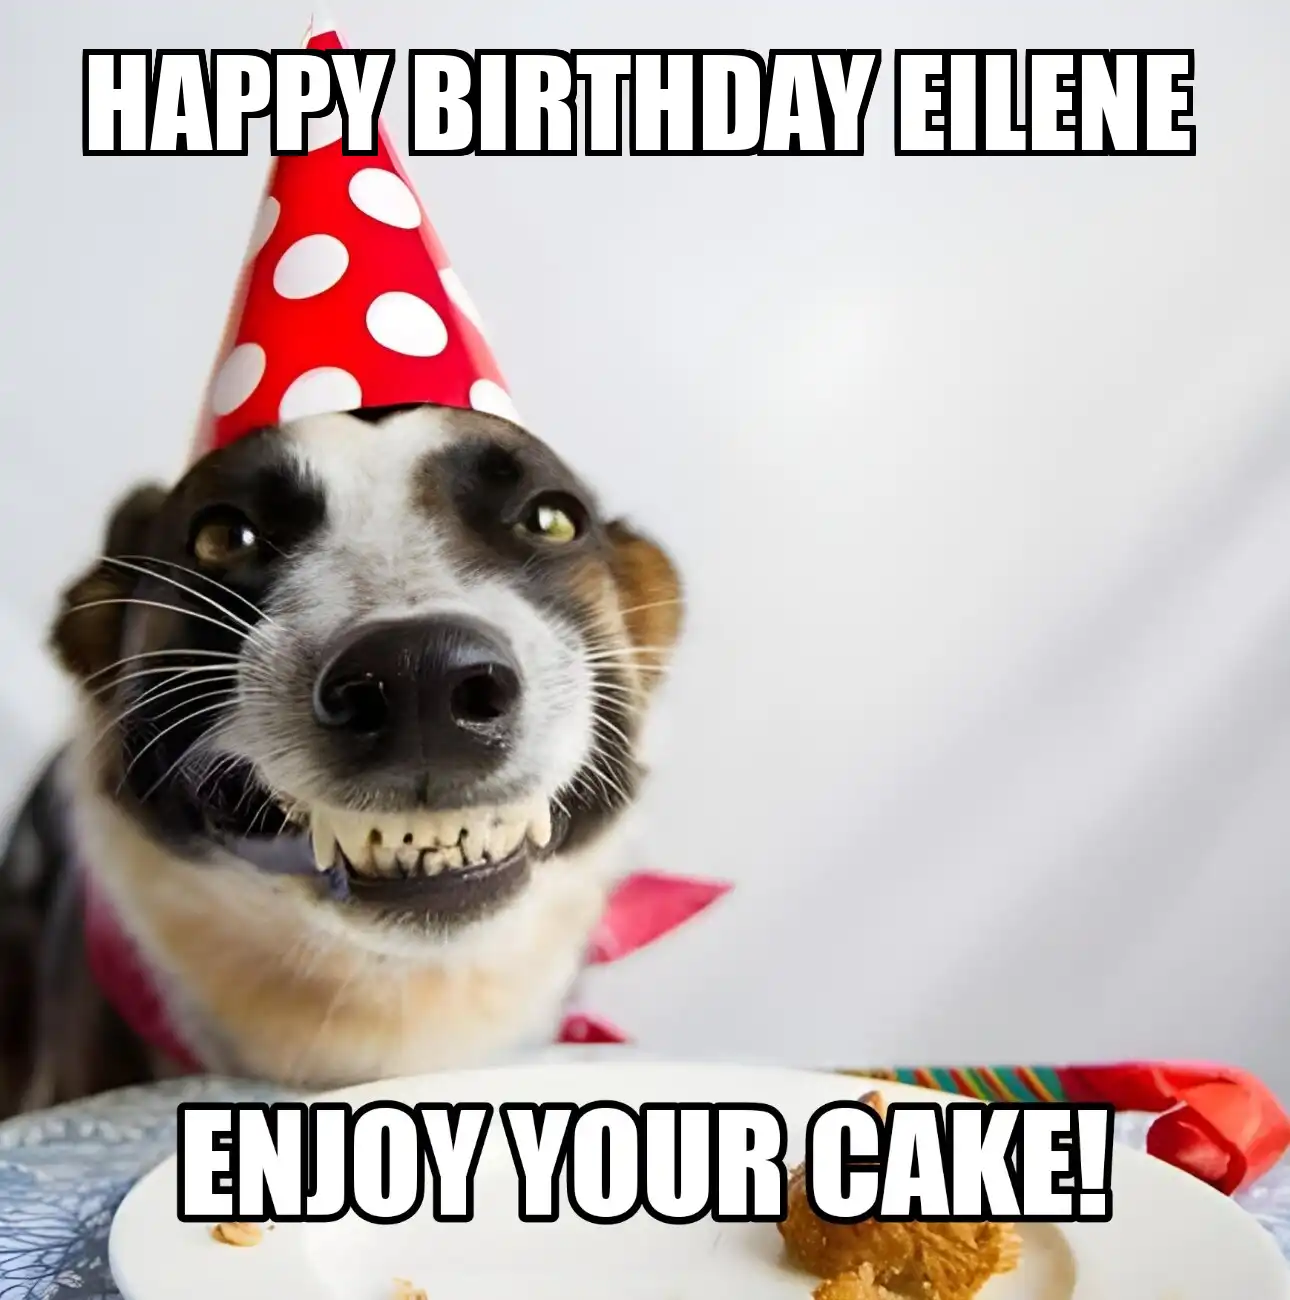 Happy Birthday Eilene Enjoy Your Cake Dog Meme